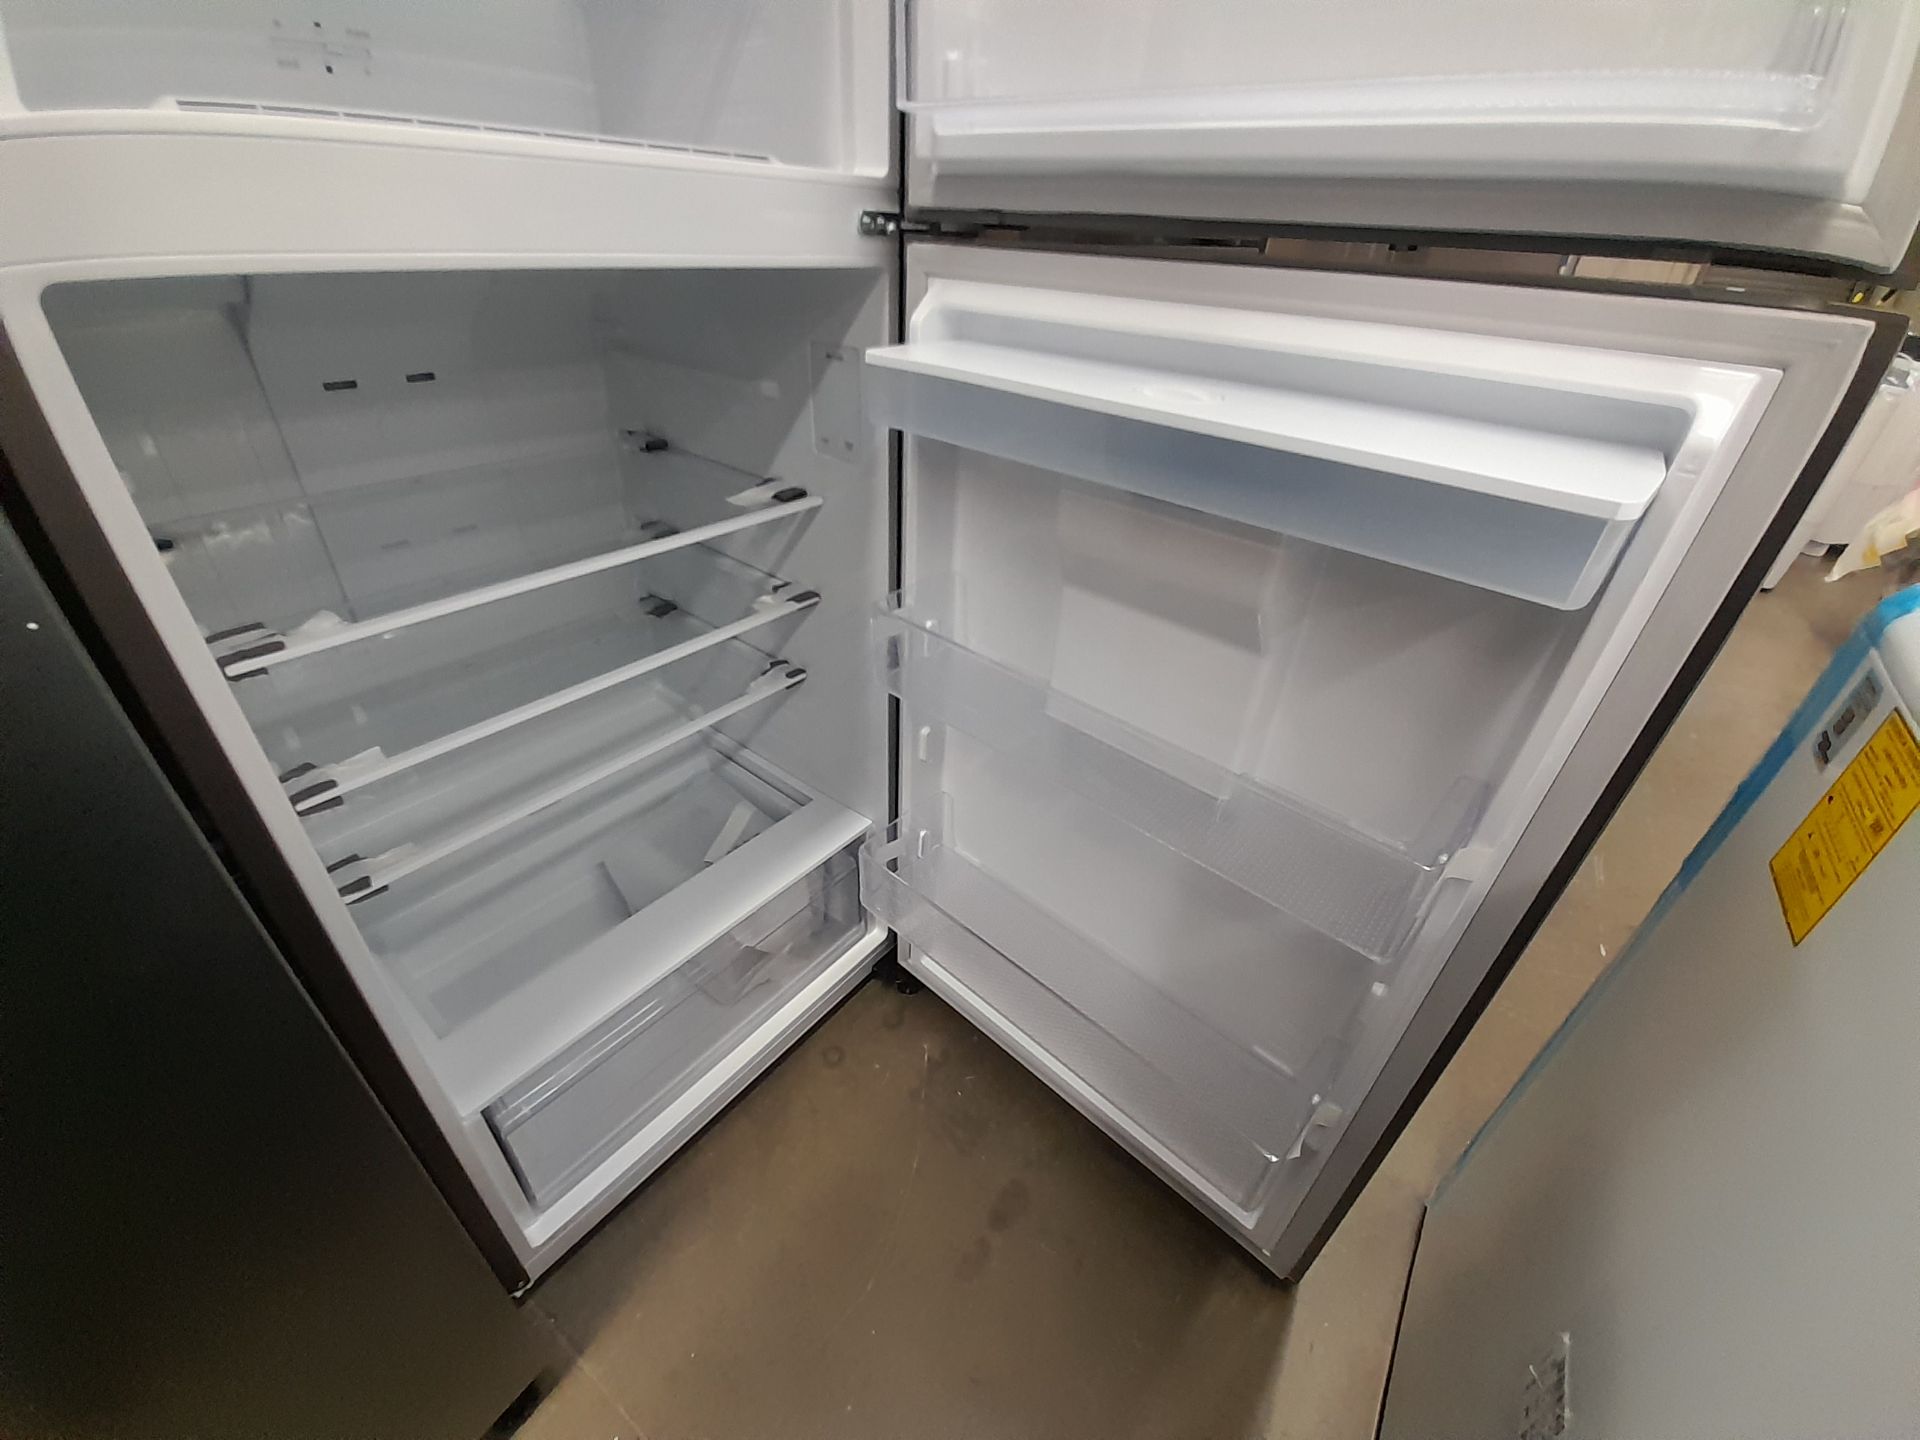 Lote de 2 refrigeradores contiene: 1 refrigerador con dispensador de agua Marca SAMSUNG, Modelo - Image 7 of 8